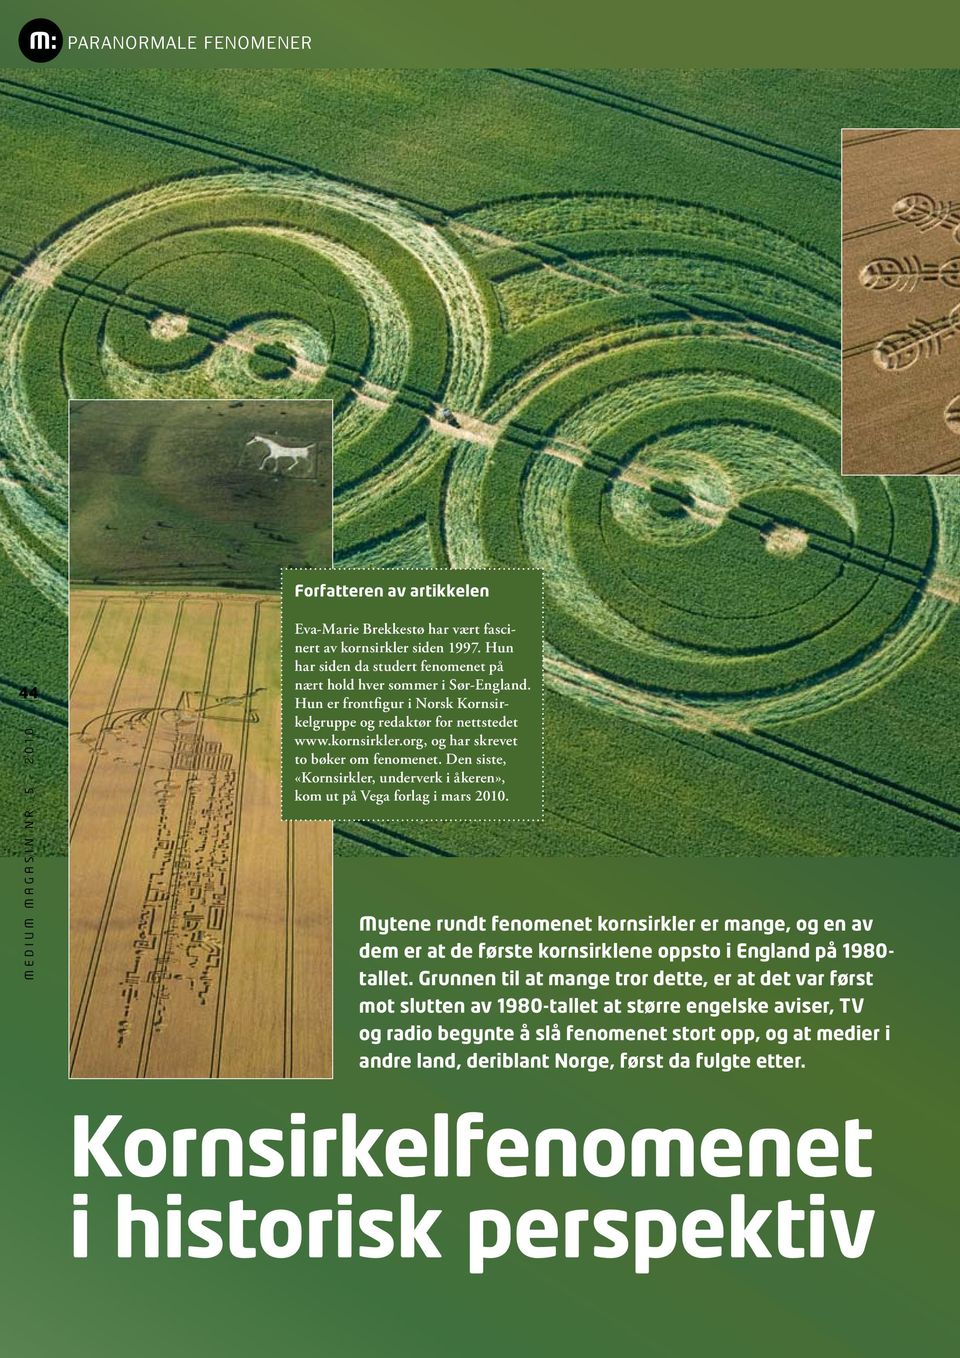 Den siste, «Kornsirkler, underverk i åkeren», kom ut på Vega forlag i mars 2010.